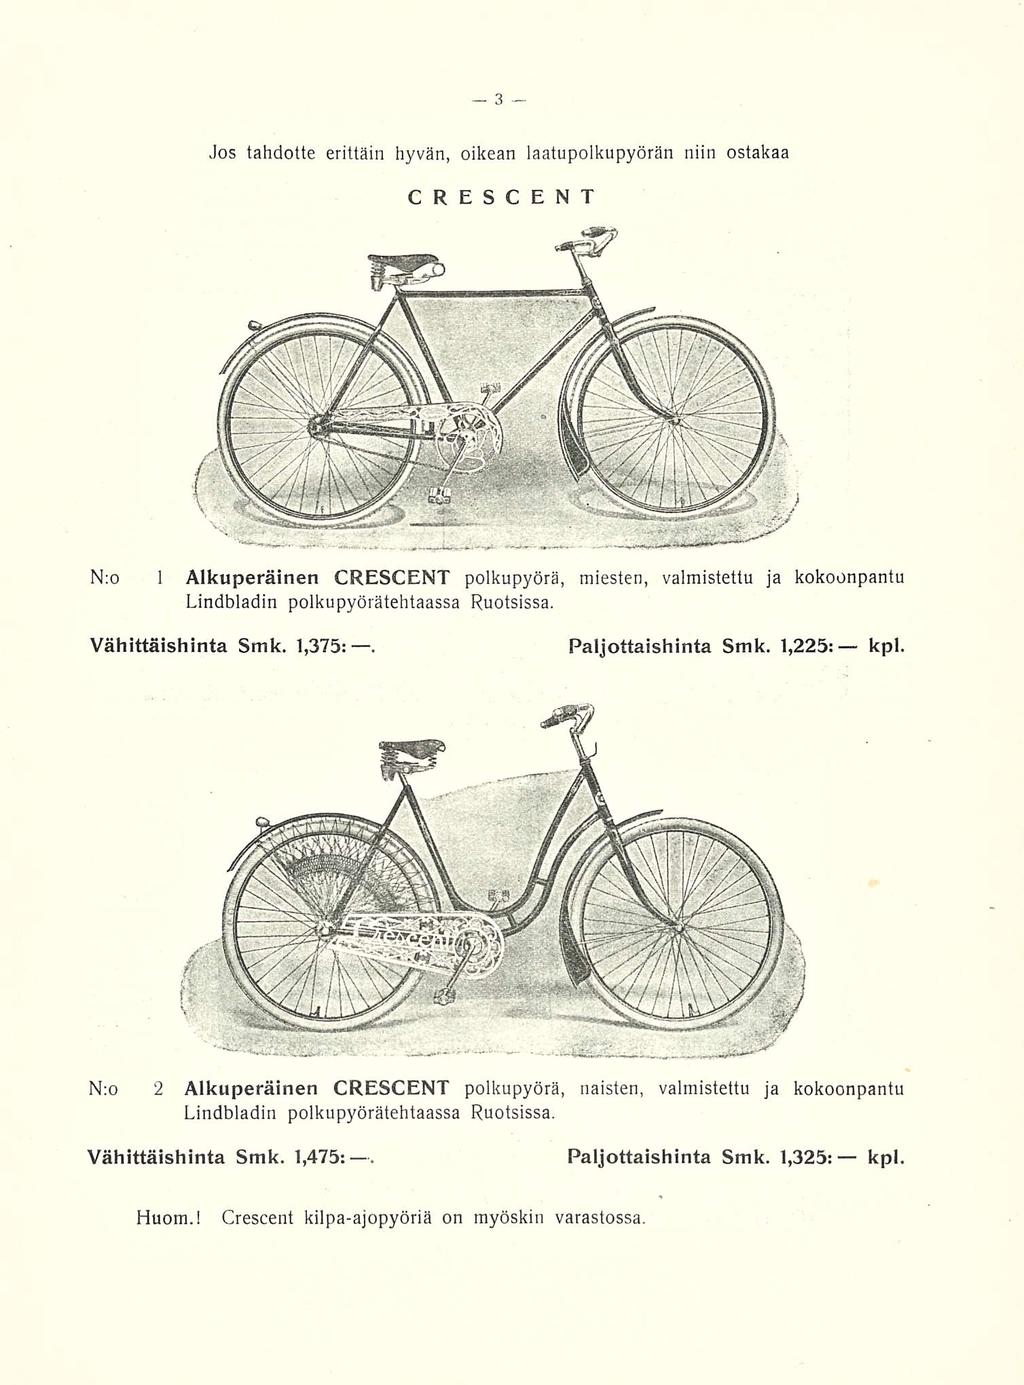 Jos tahdotte erittäin hyvän, oikean laatupolkupyörän niin ostakaa CRESCENT N:o 1 Alkuperäinen CRESCENT polkupyörä, miesten, valmistettu ja kokoonpantu Lindbladin polkupyörätehtaassa Ruotsissa.